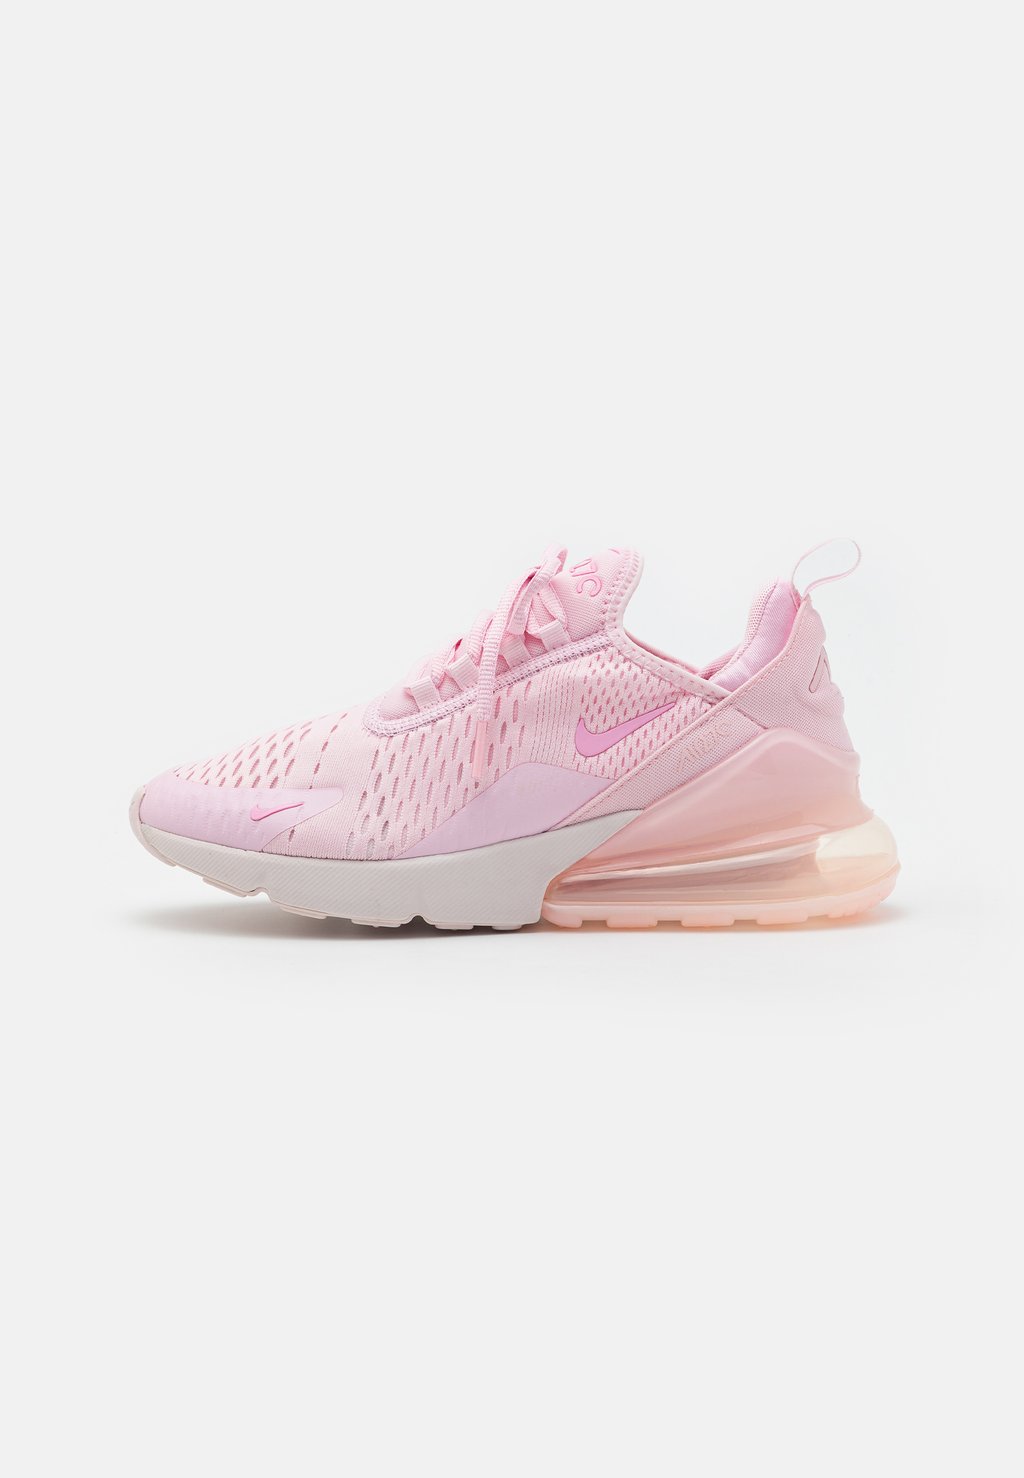 Низкие кроссовки Air Max 270 Nike, цвет pink foam/pink rise/pink foam/pearl pink цена и фото